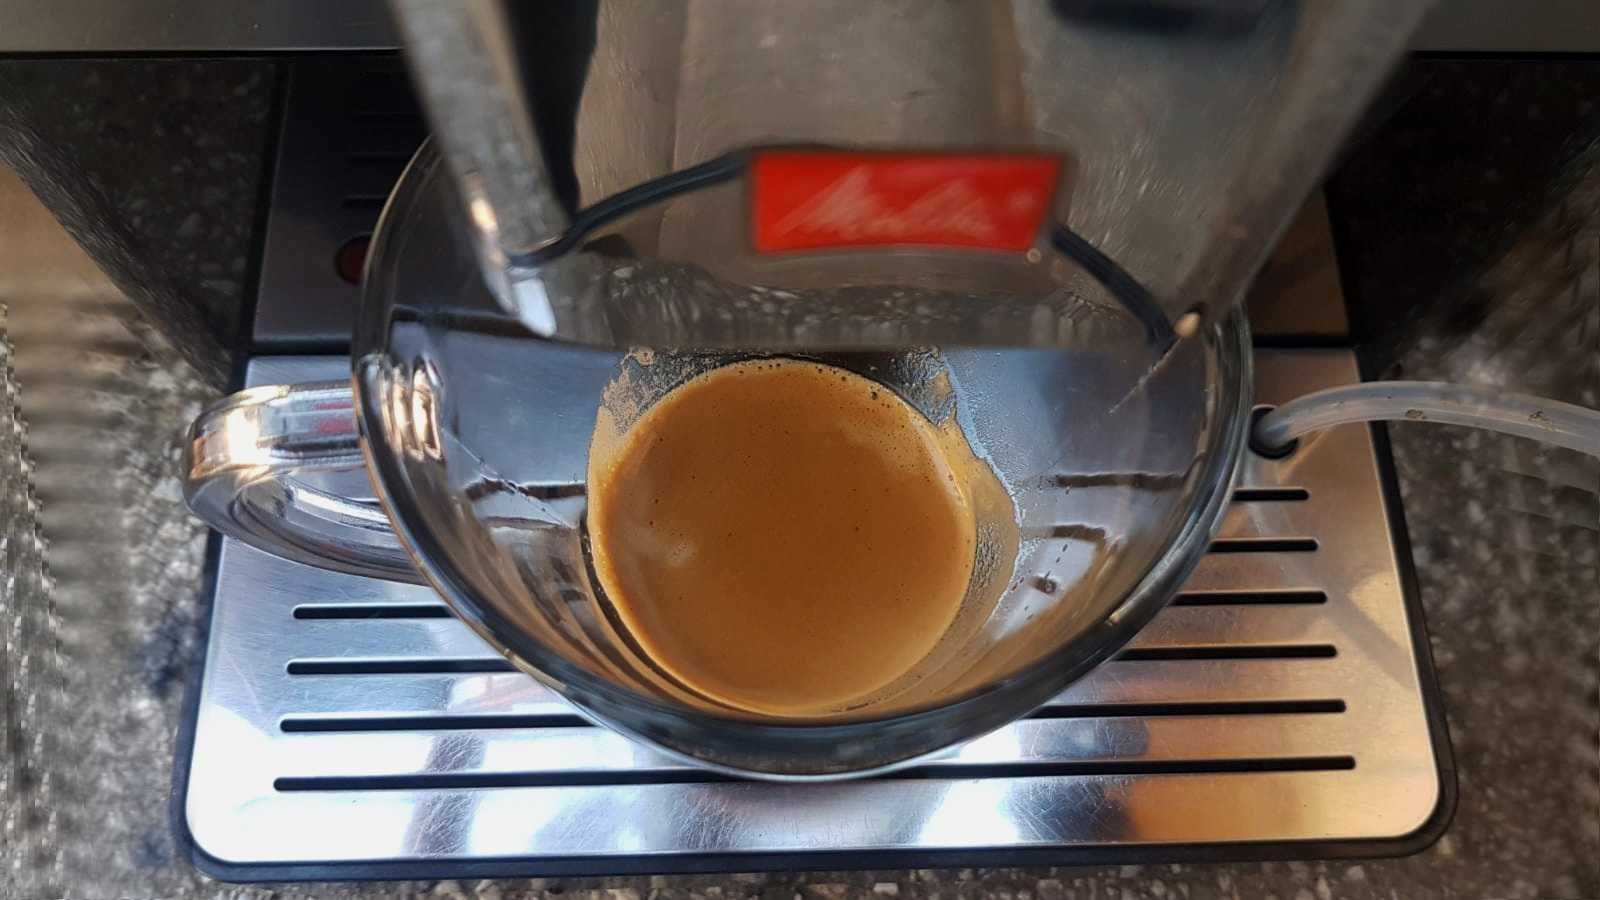 Espressor/expresor Melitta Passione cappuccino ristretto latte cappucc